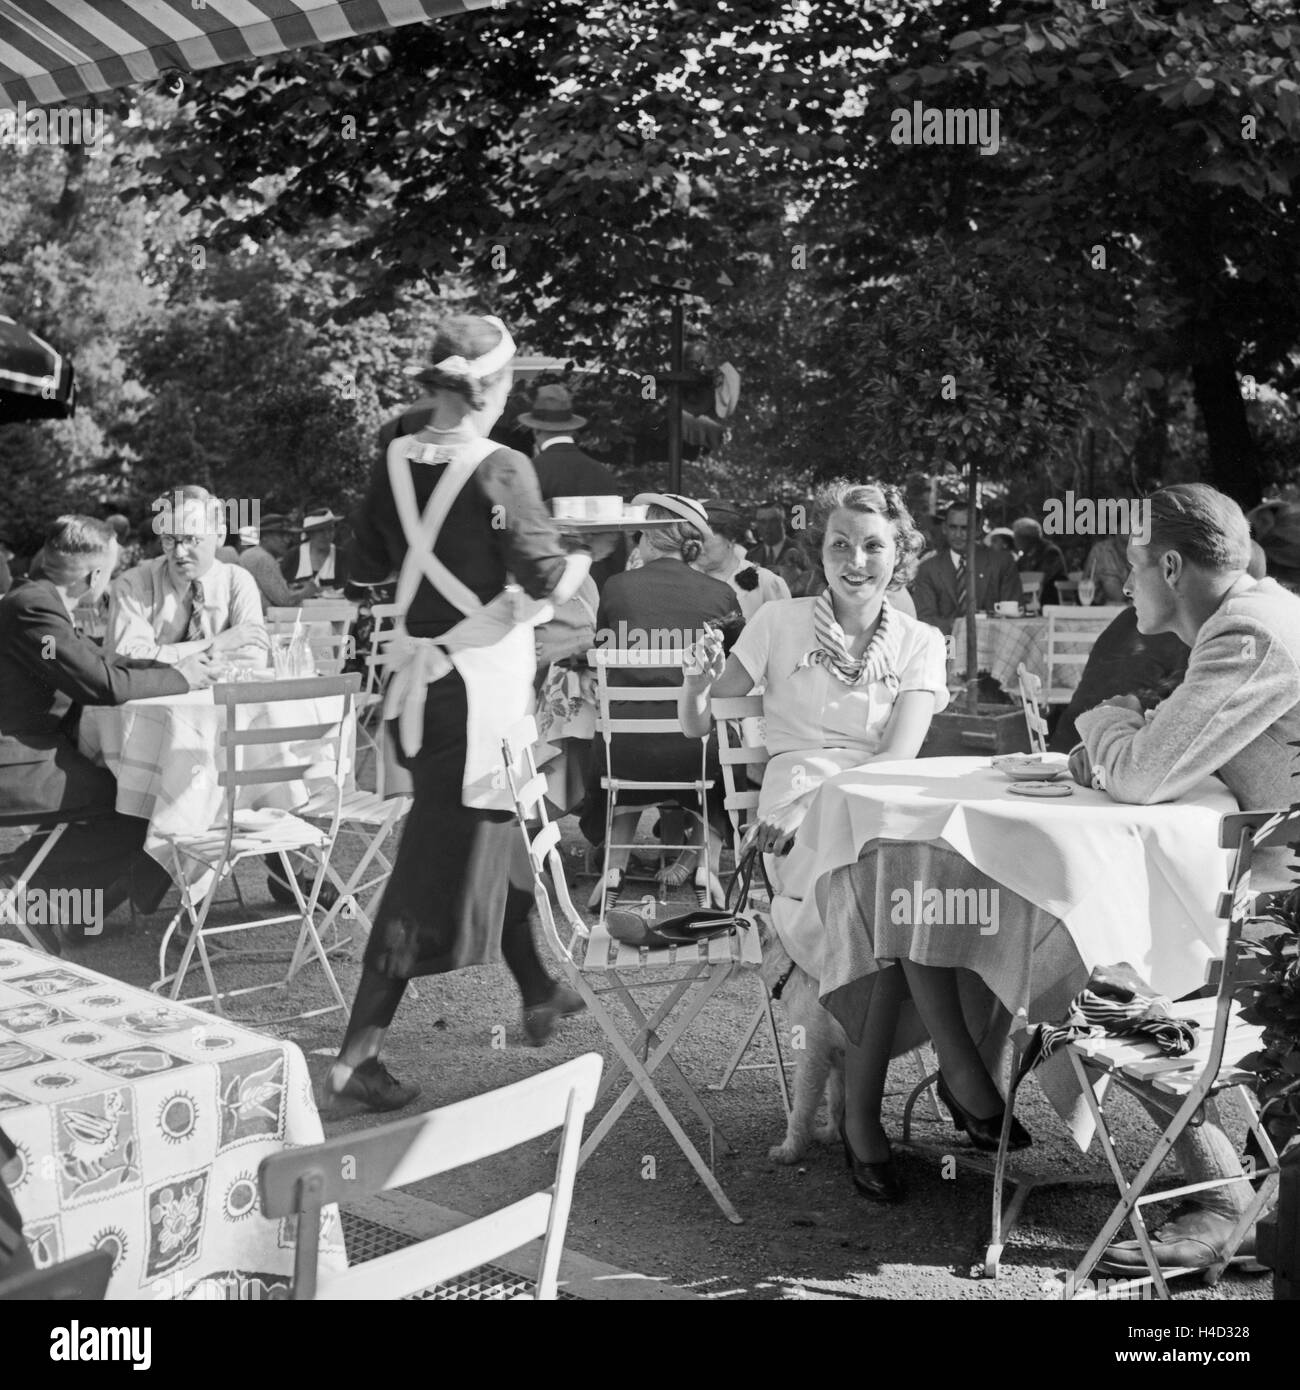 Menschen in einem Cafe a Stoccarda, Deutschland 1930er Jahre. La gente in un bar di Stoccarda, Germania 1930s. Foto Stock